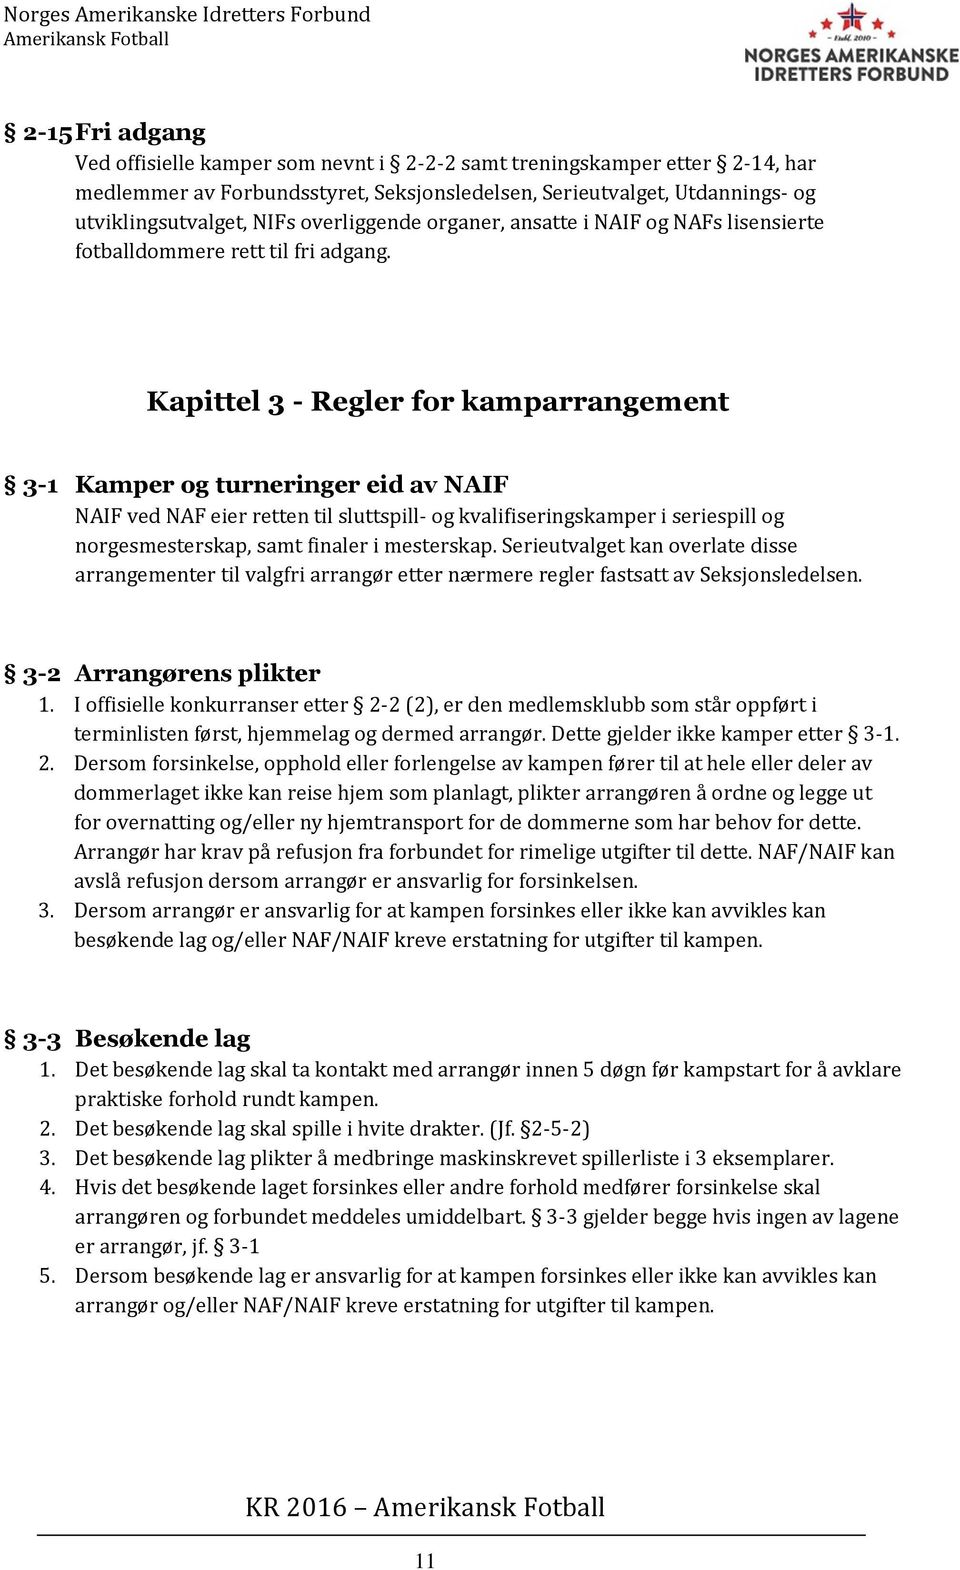 Kapittel 3 - Regler for kamparrangement 3-1 Kamper og turneringer eid av NAIF NAIF ved NAF eier retten til sluttspill- og kvalifiseringskamper i seriespill og norgesmesterskap, samt finaler i